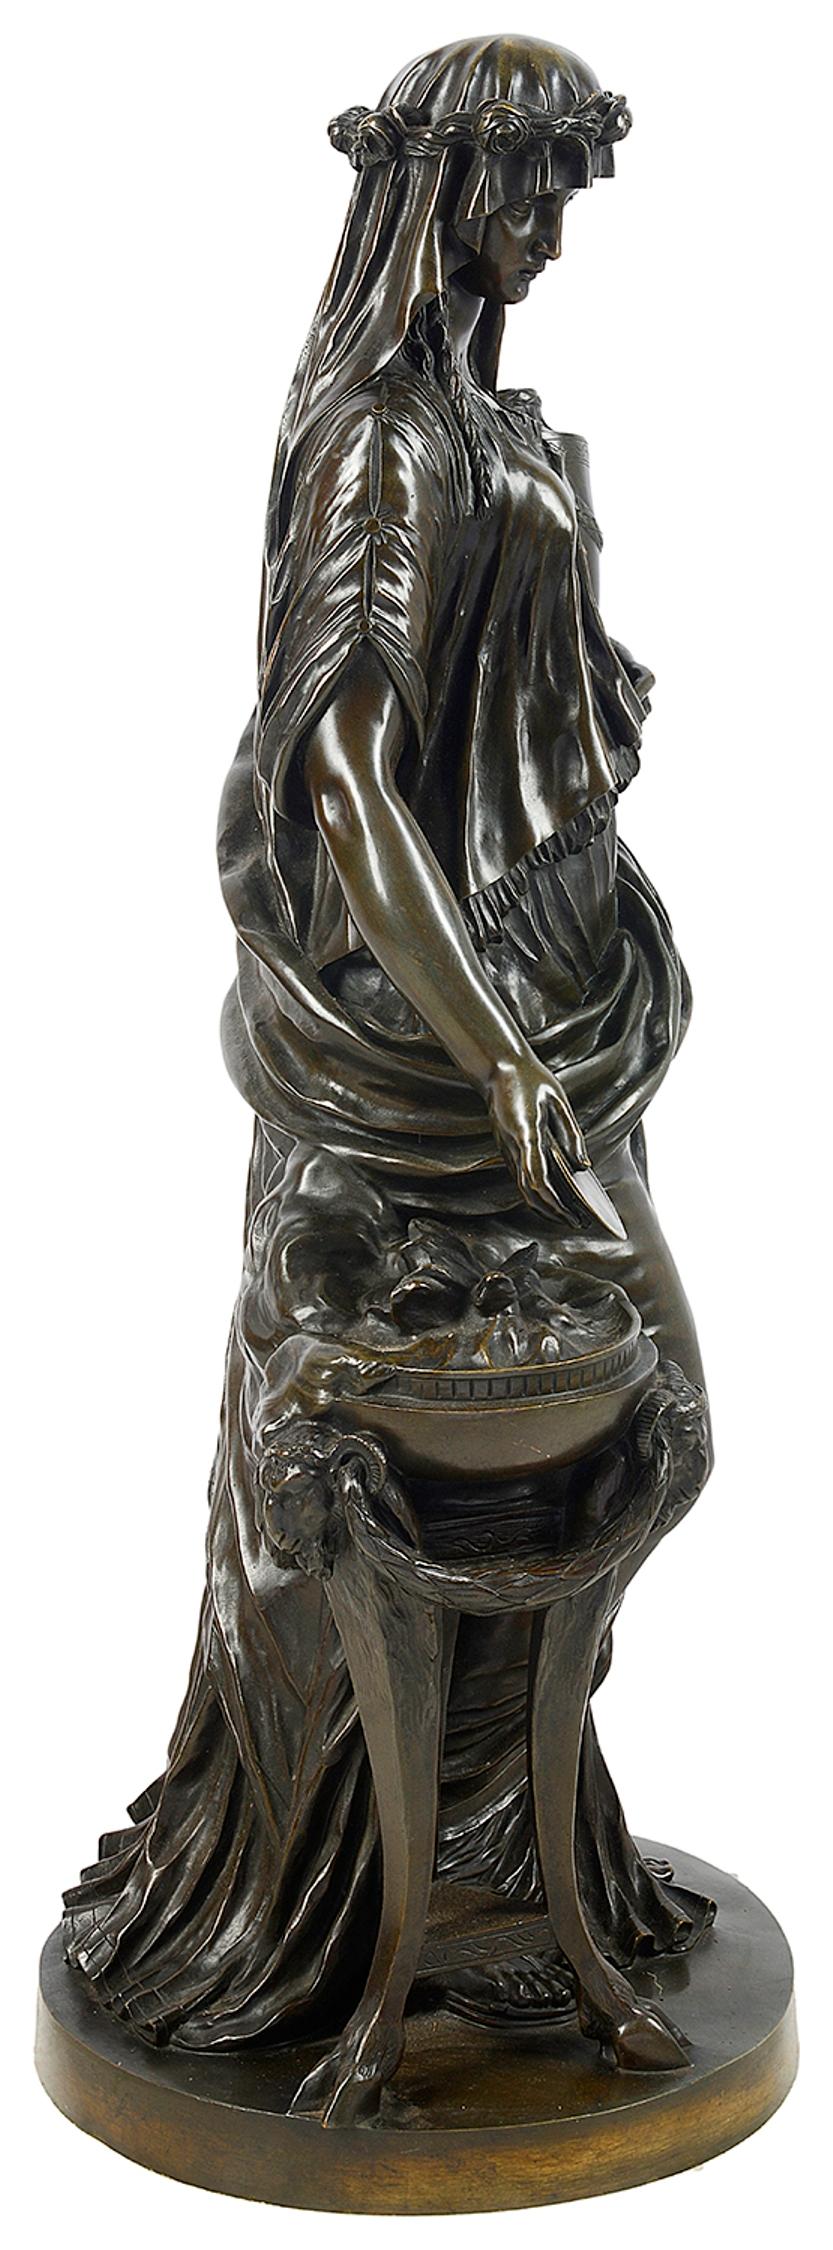 Grande statue française en bronze du 19ème siècle de très bonne qualité représentant une figure féminine classique, signée ;
 Graux Marly

La fonderie de Jules Graux est installée au 8 rue du Parc-Royal à partir de 1860. En 1880, ses fils